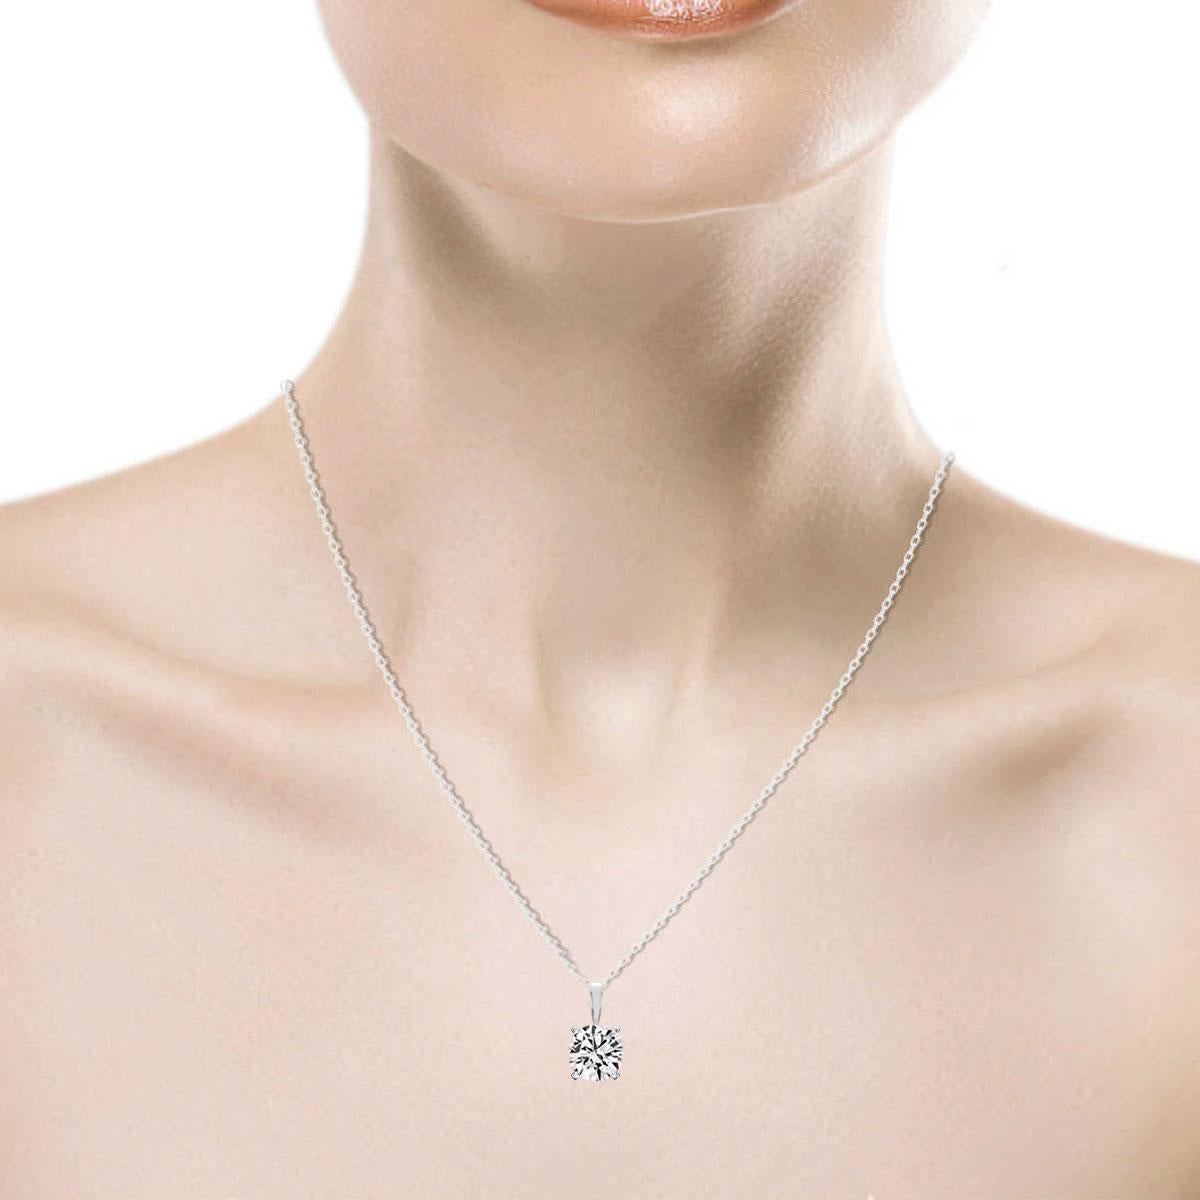 3/4 carat diamond pendant necklace